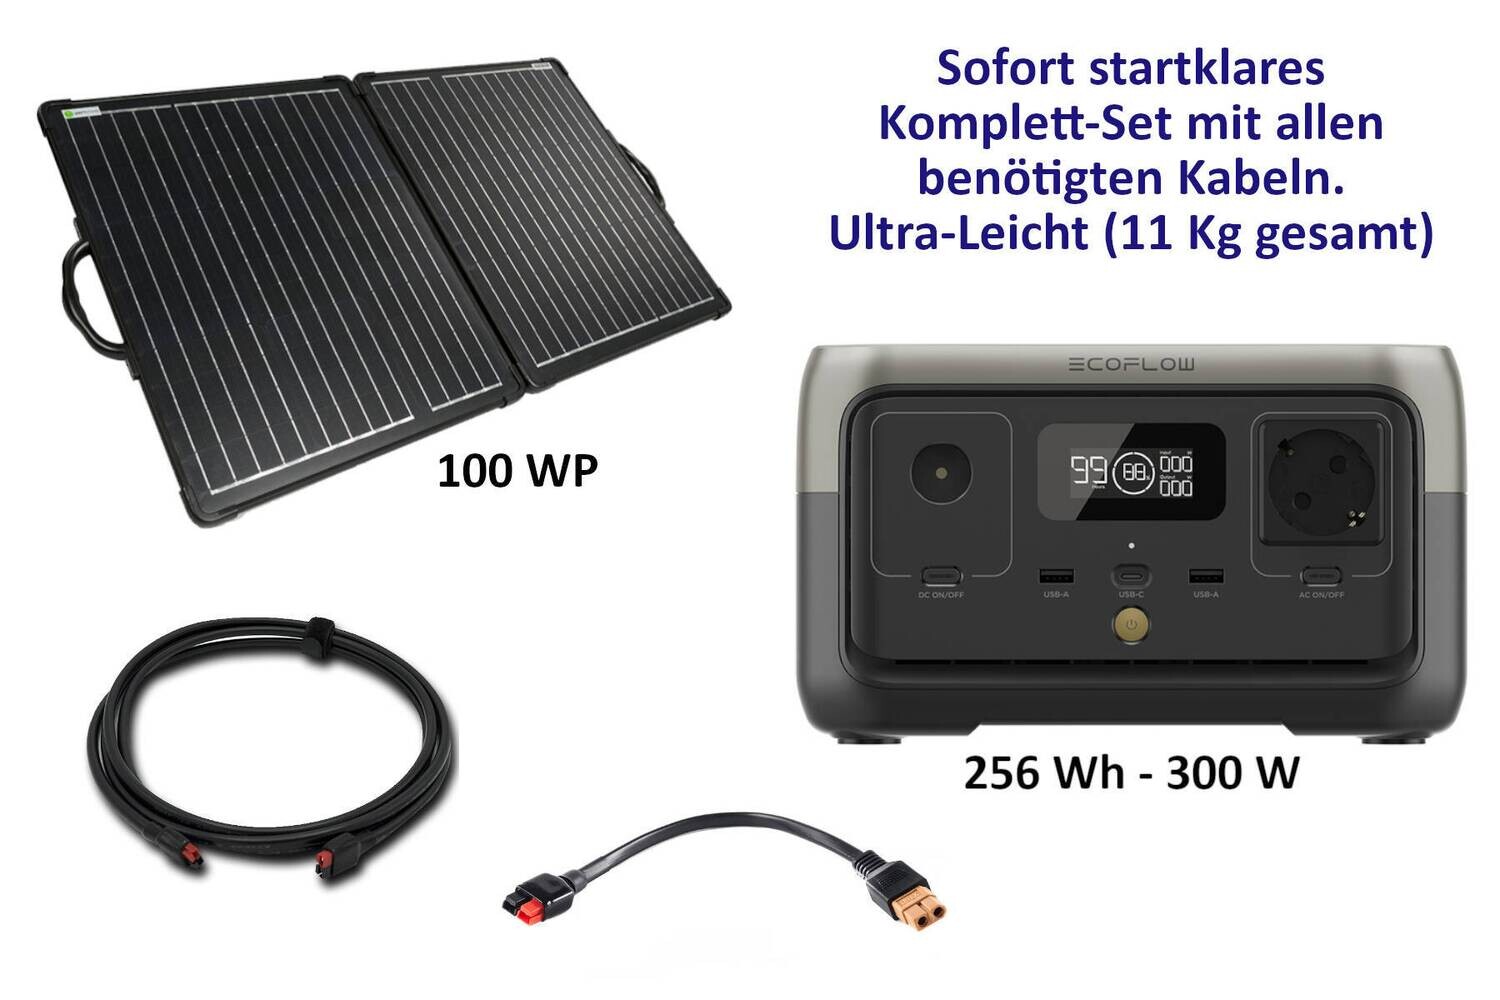 Ecoflow River 2 (256 Wh) mit Solarkoffer 100 WP und Kabel-Set - startklar für Sie mit Packtasche für den Solarkoffer